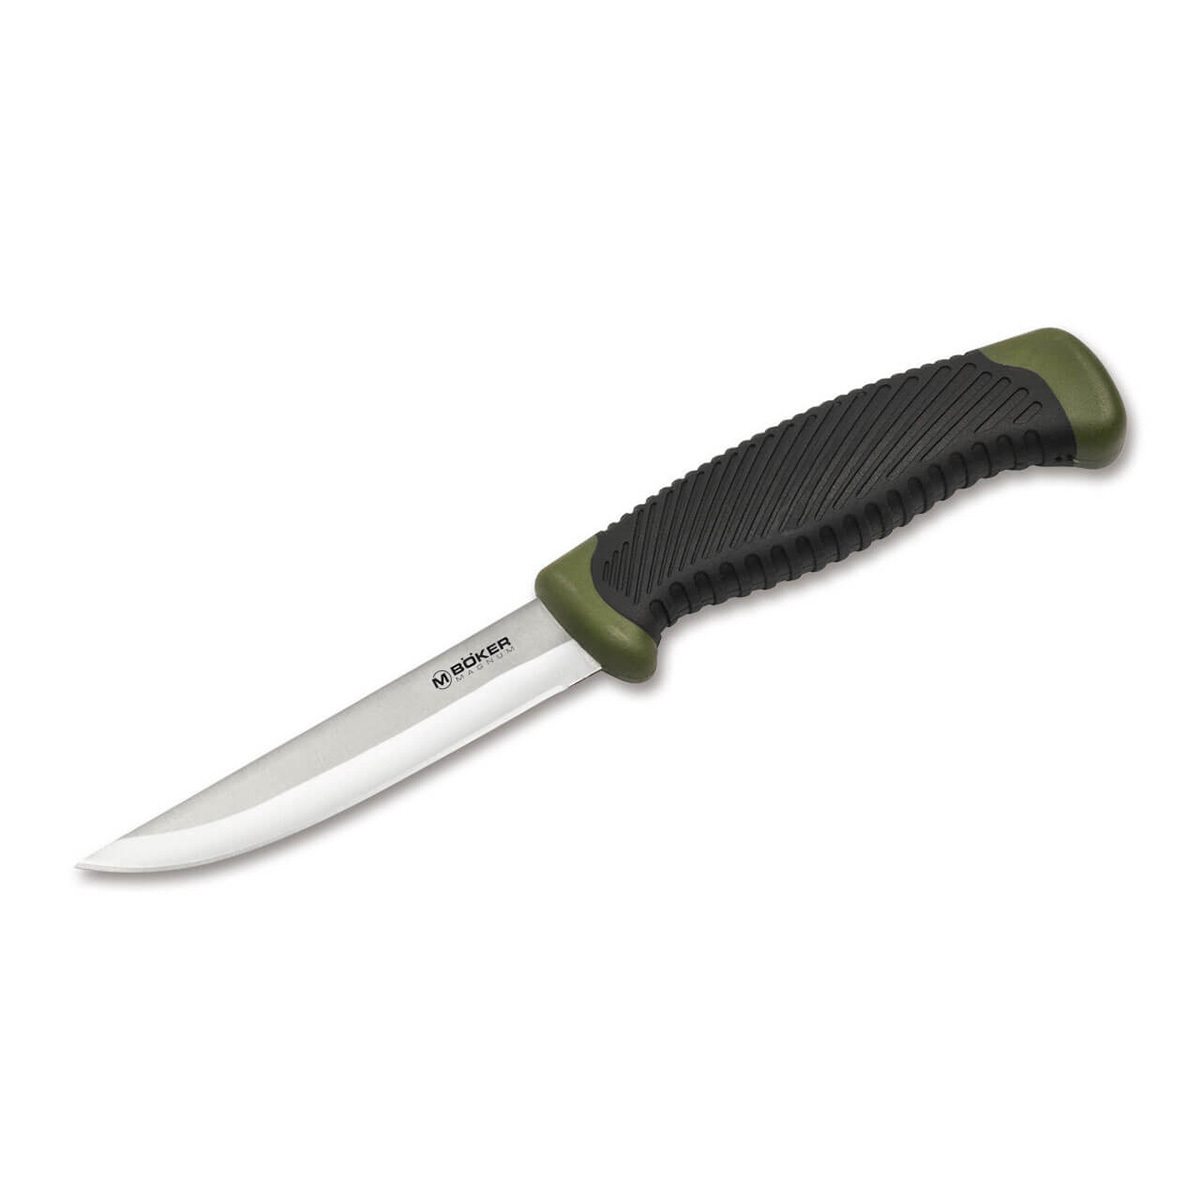 Нож рыбацкий с фиксированным клинком Magnum Falun Green, сталь 420 Satin Plain, рукоять полипропилен/термопластик нож с фиксированным клинком ontario rd7 micarta серрейтор